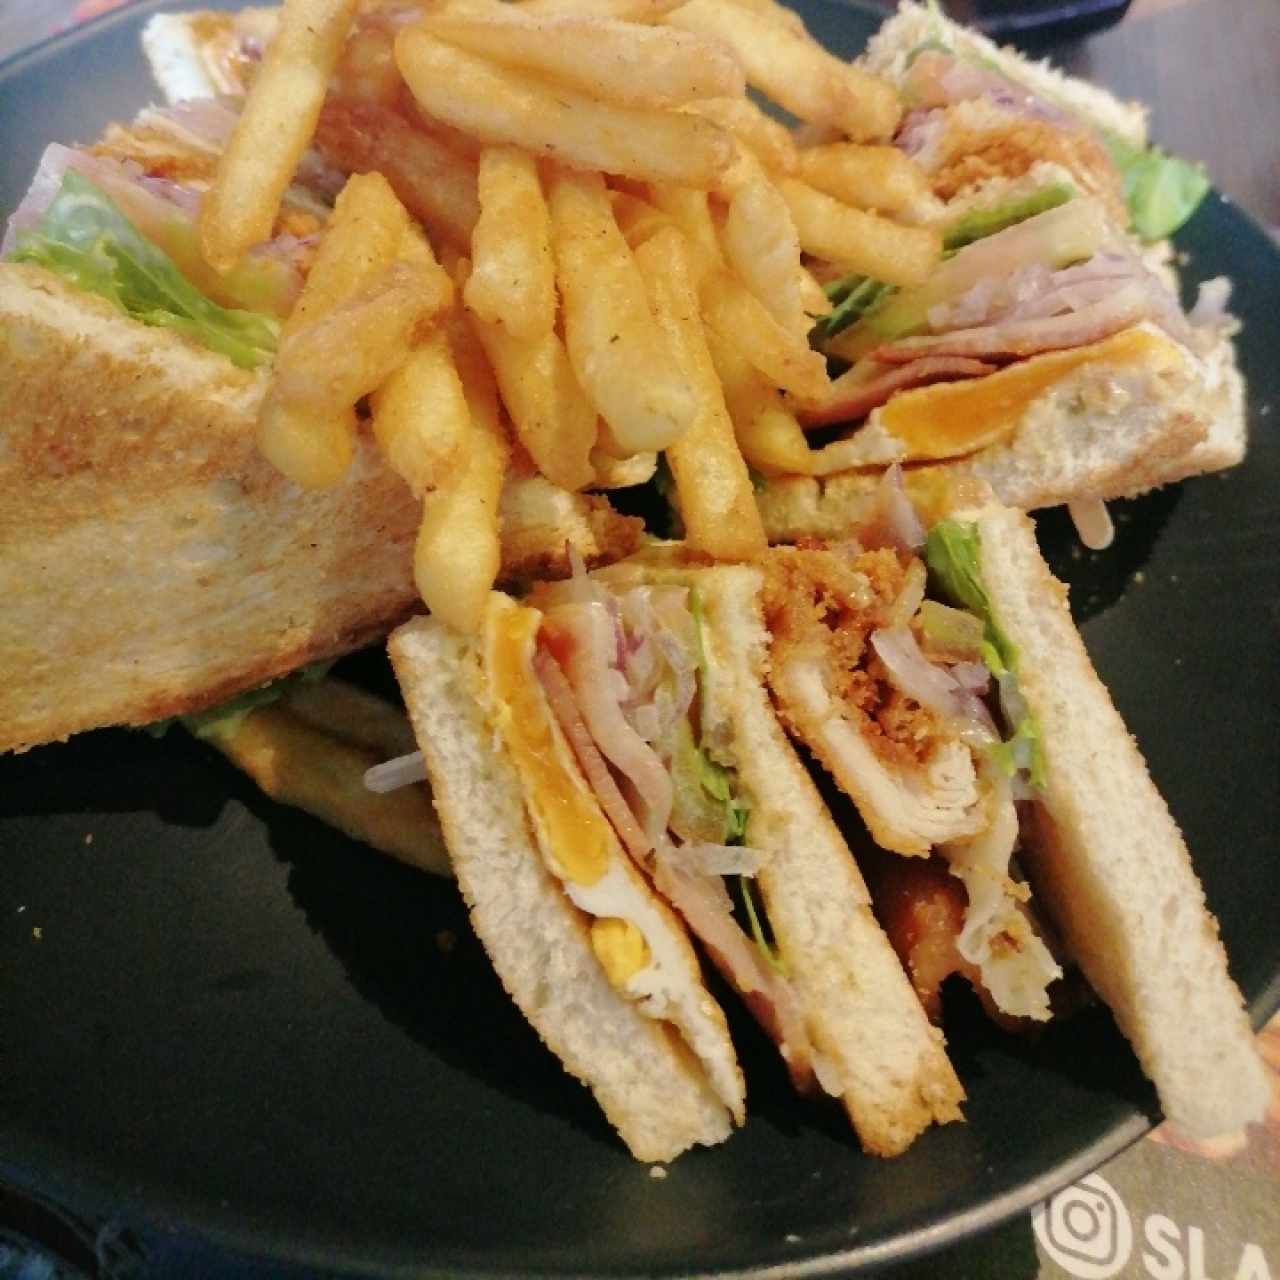 Sandwiches - Club Sandwich Slabón cryspi